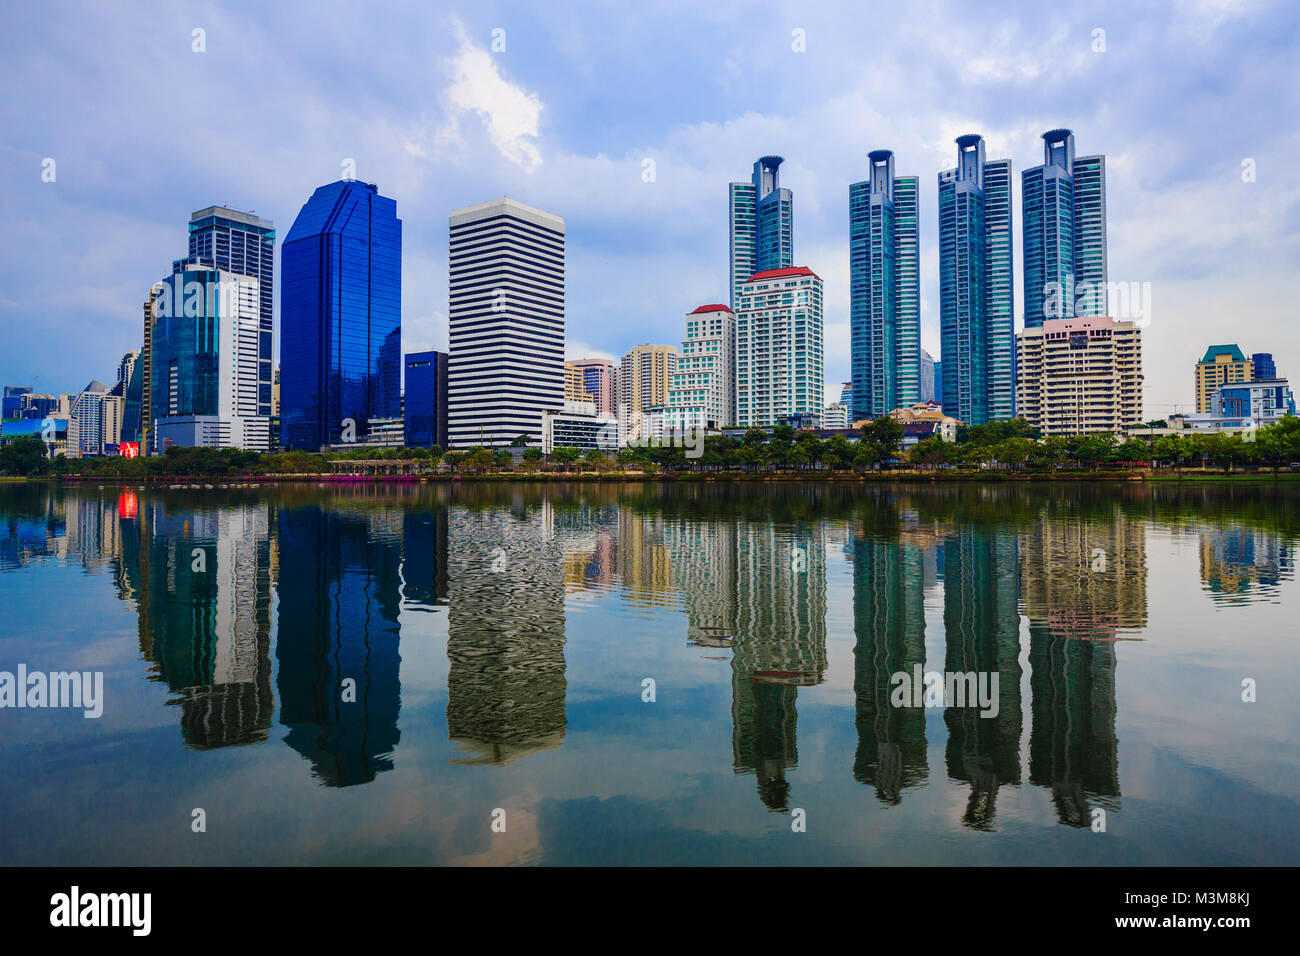 urban city view at Benjakitti Park, Bangkok, Thailand Stock Photo